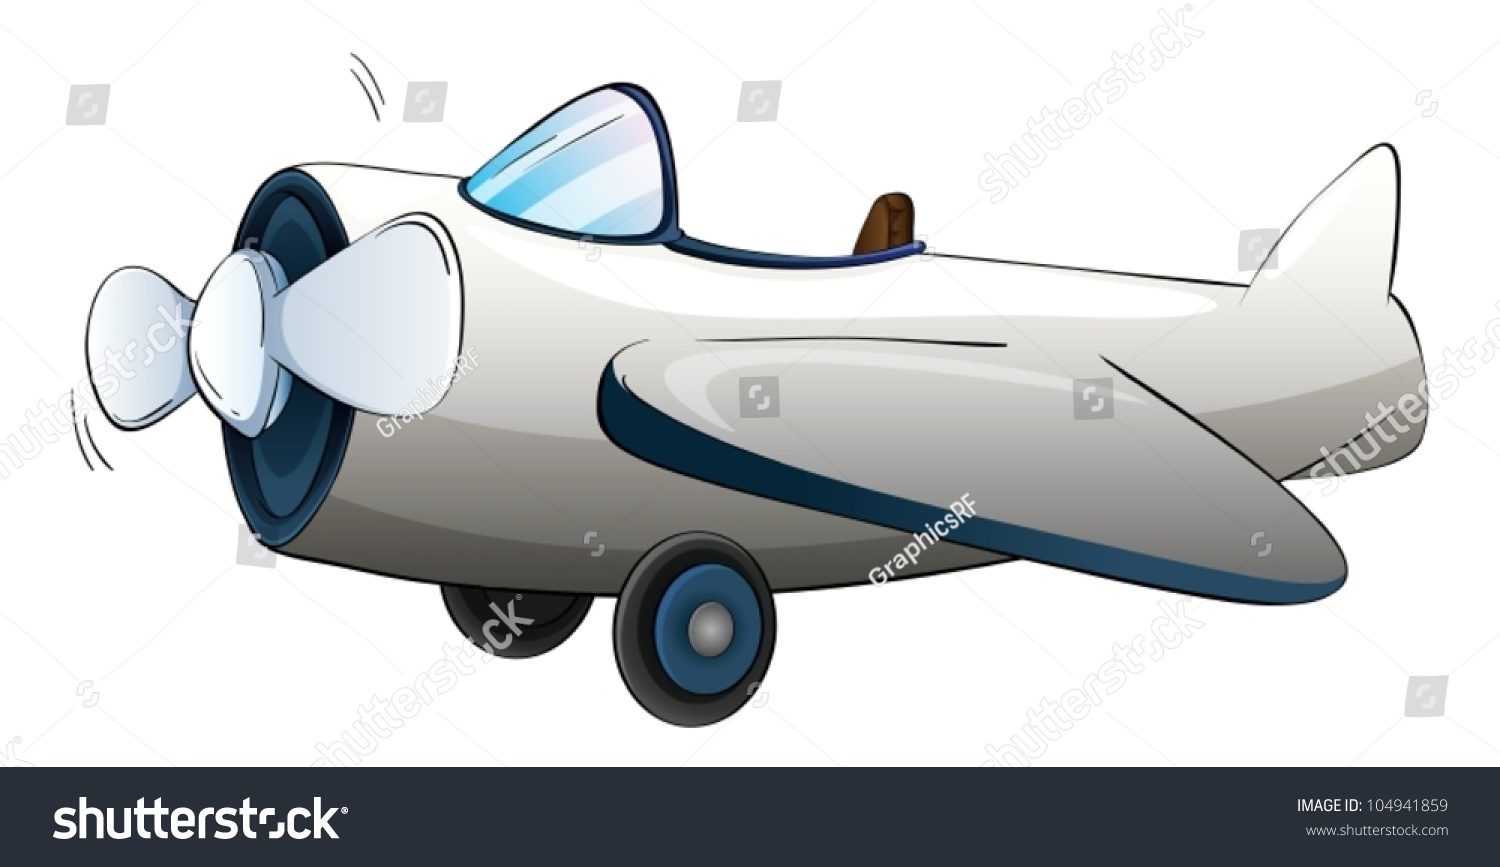 Illustrtion Of A Plane On White Stock Vector Illustration 104941859